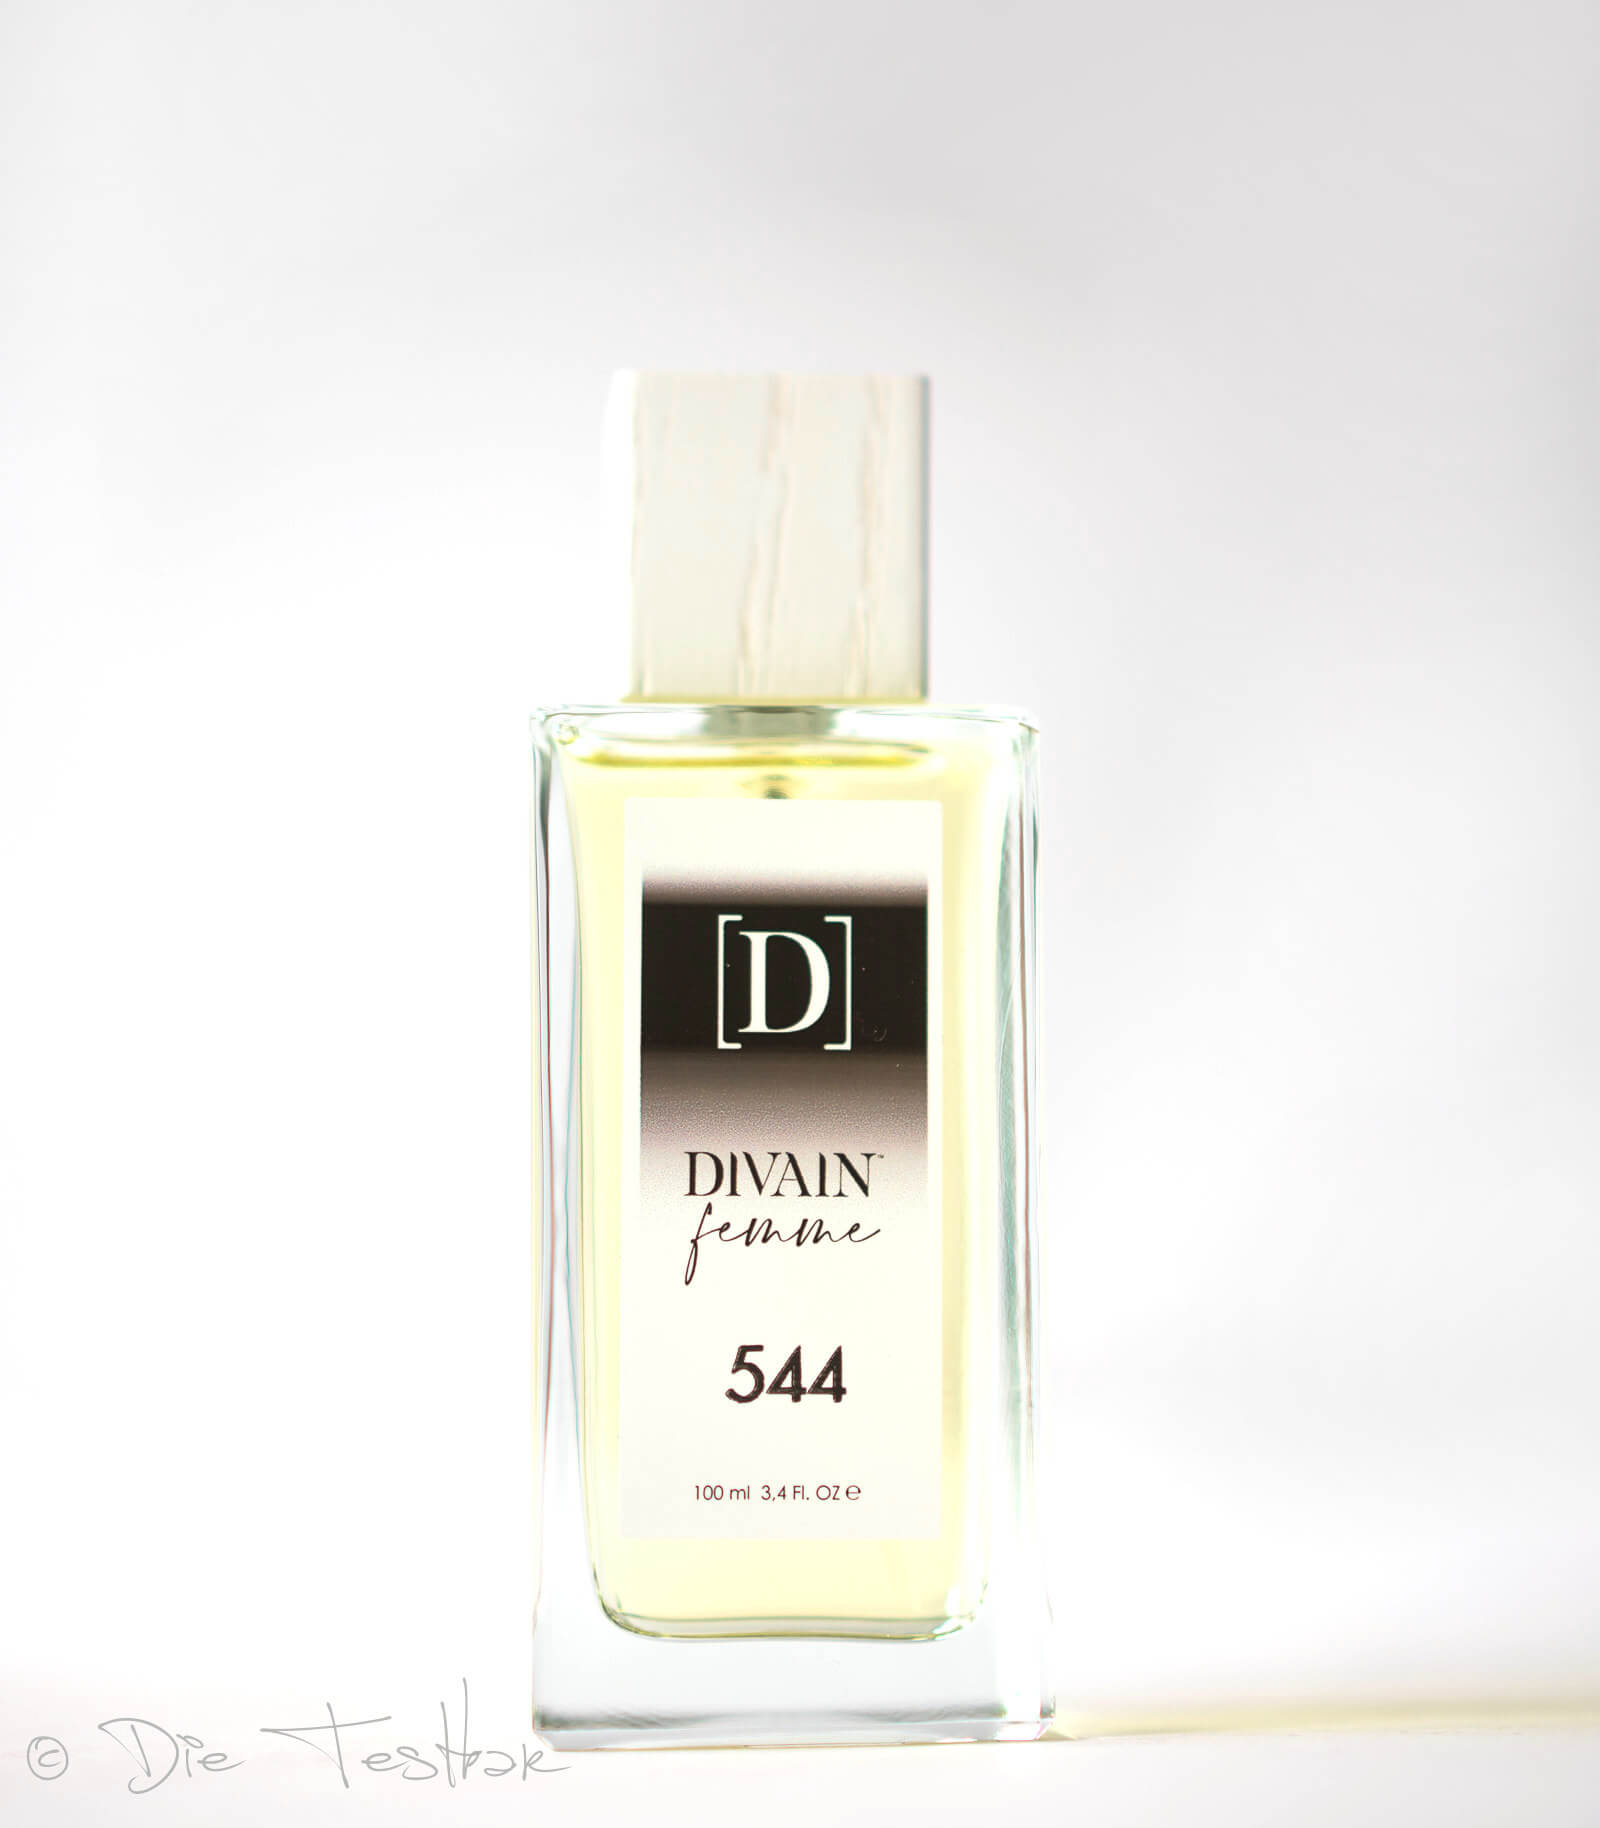 Review - Parfumzwillinge von Divain im Test 8